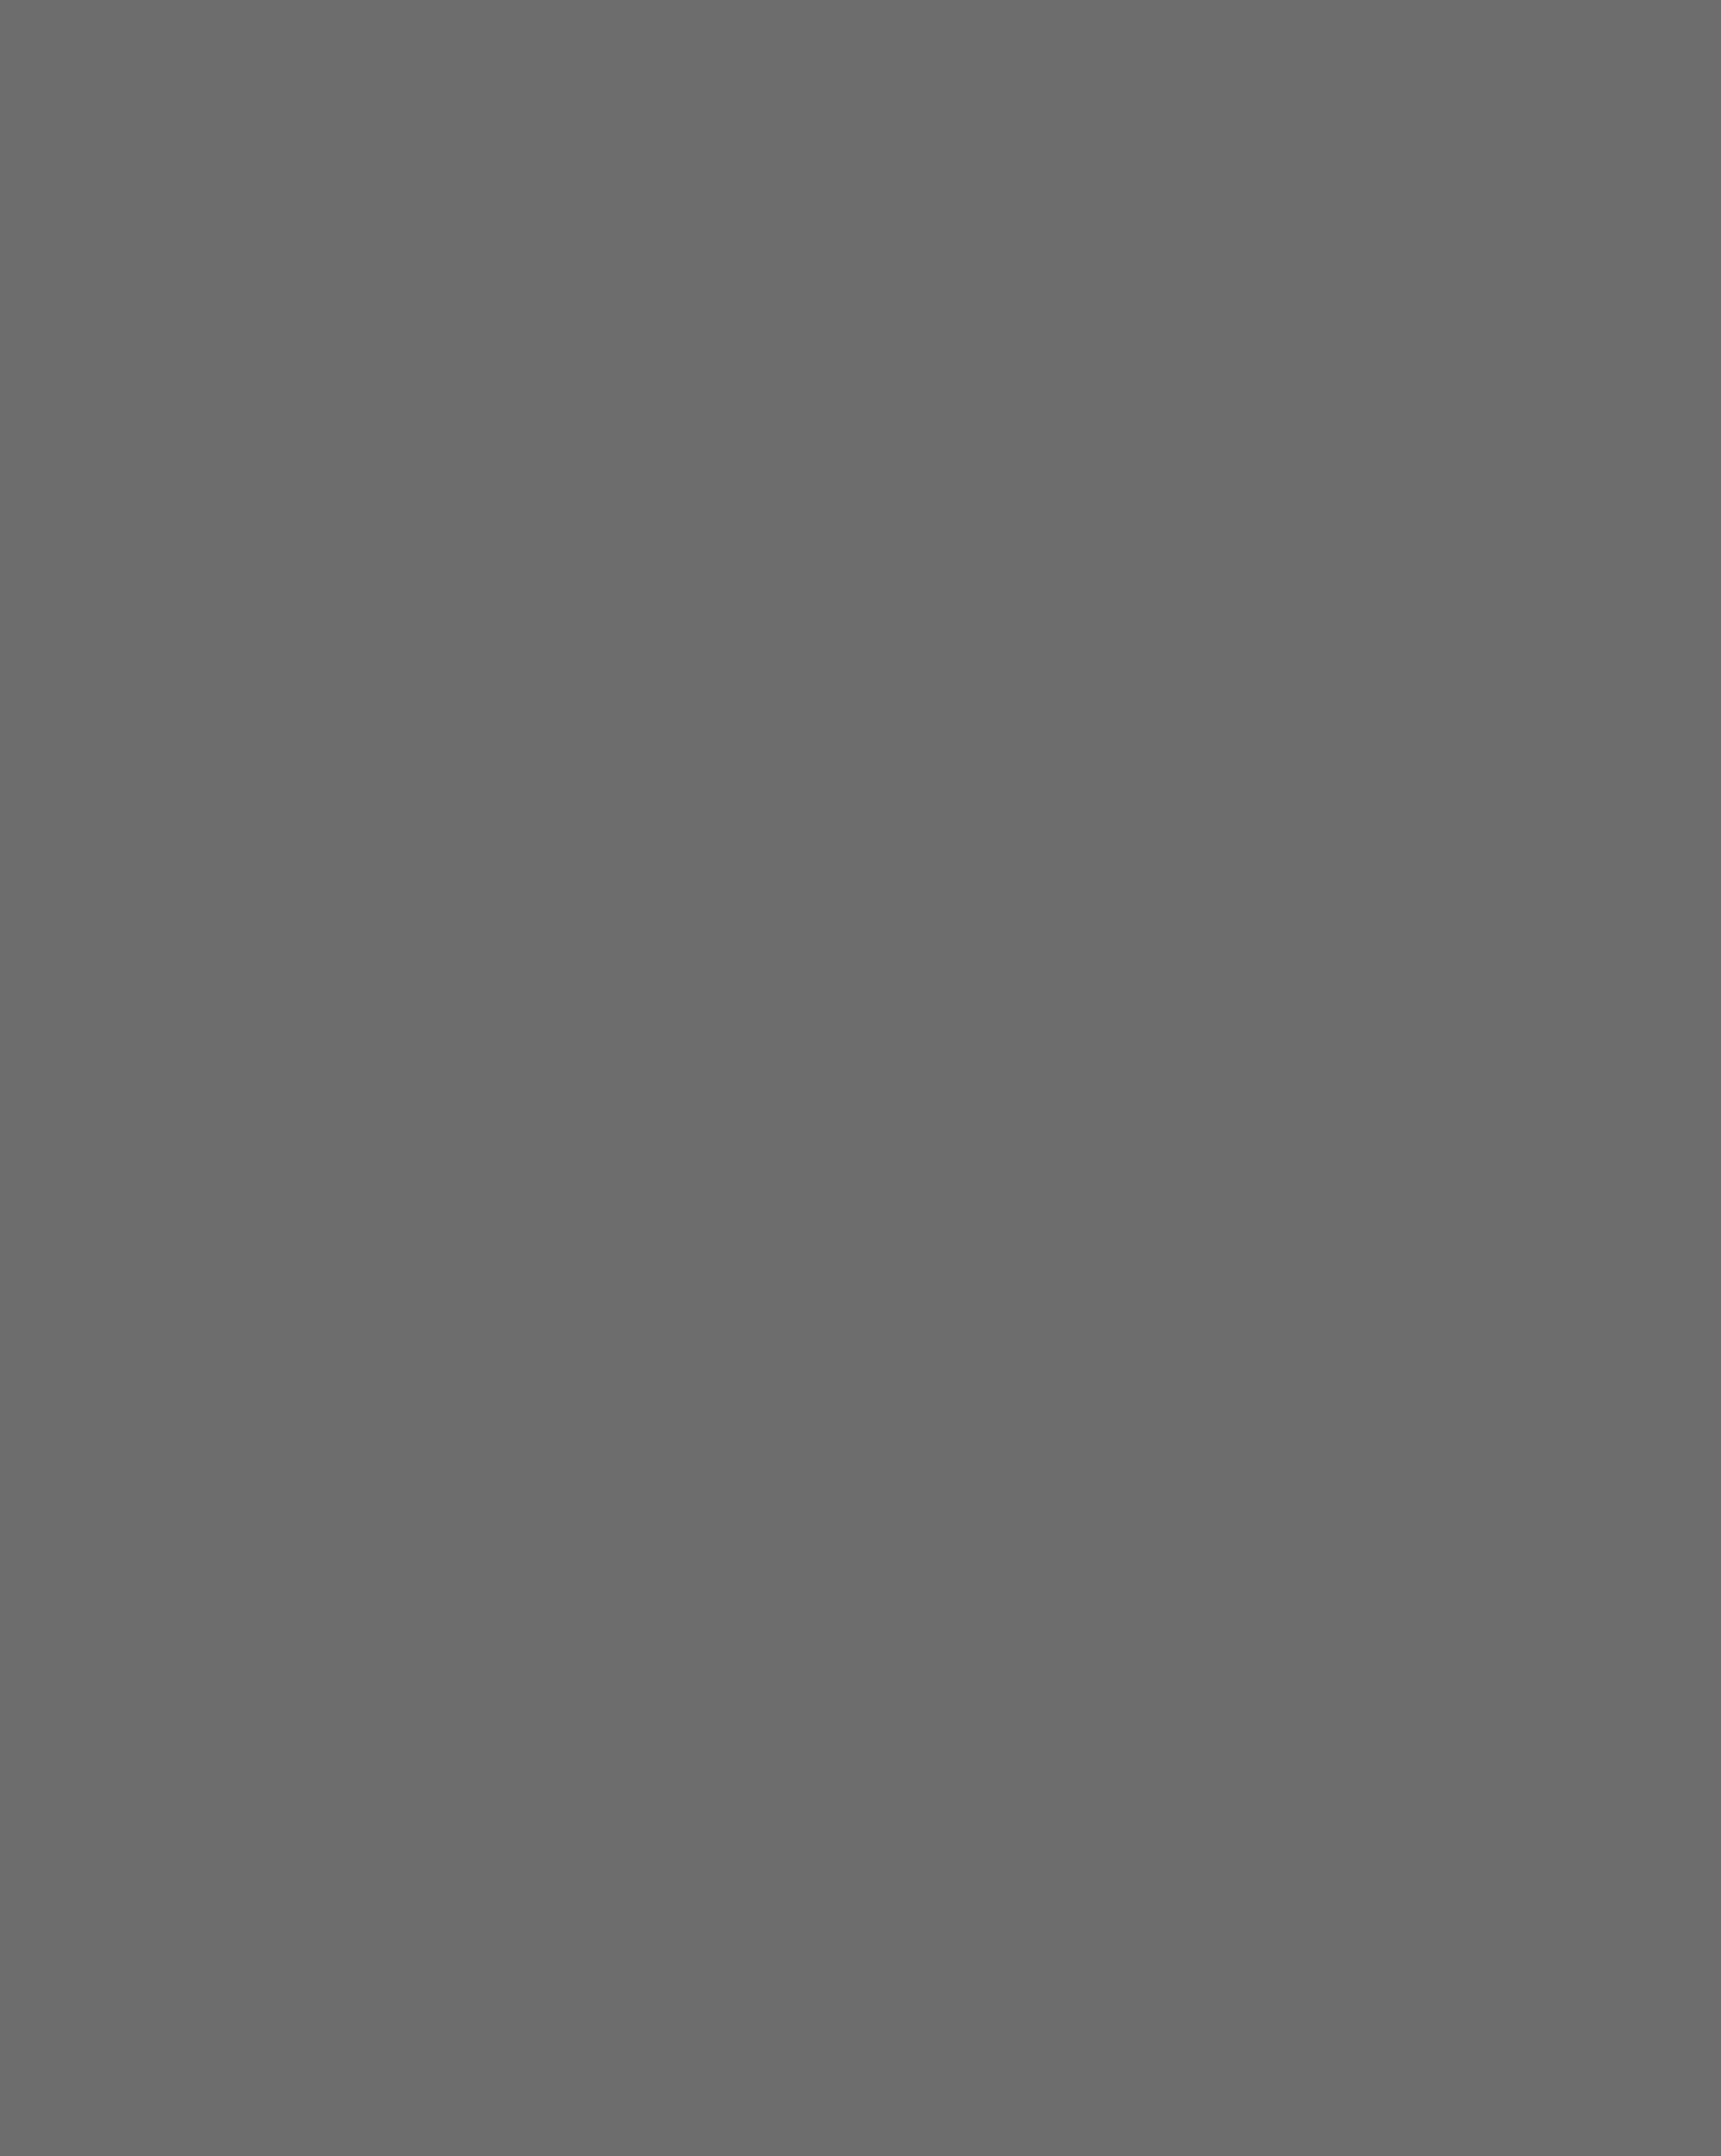 Марина Цветаева. Париж, Франция, 1926 год. Фотография: Петр Шумов / Мультимедиа Арт Музей, Москва